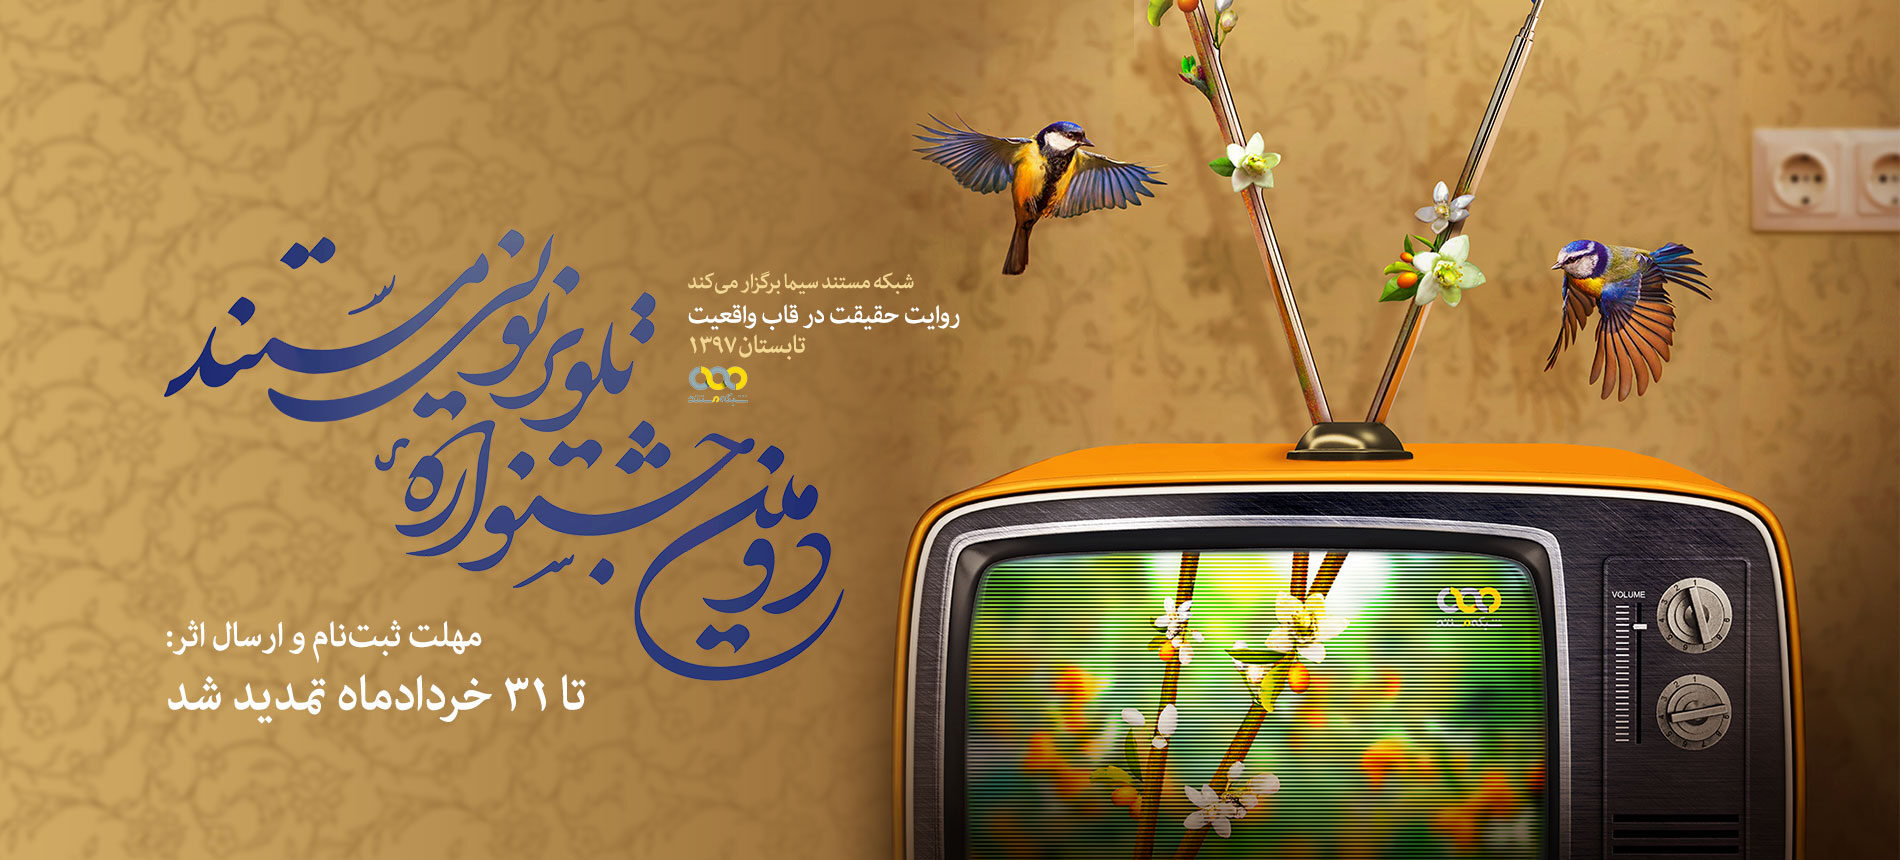 تمدید مهلت ثبت نام در دومین جشنواره تلویزیونی مستند تا 31 خردادماه